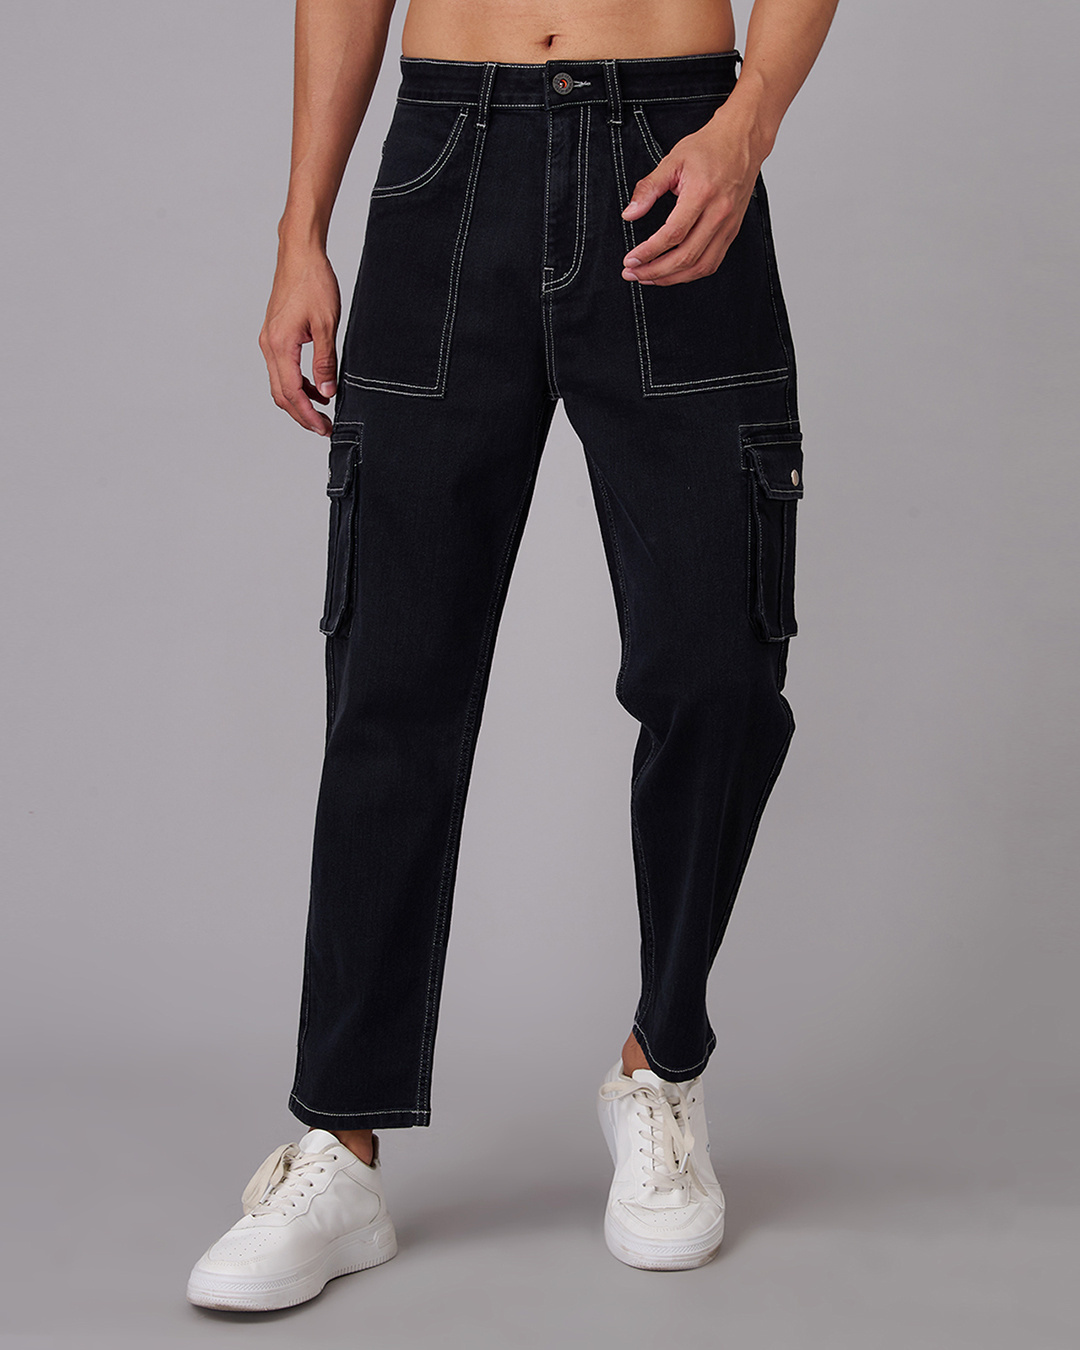 Buy Men's Black Cargo Jeans Online at Bewakoof